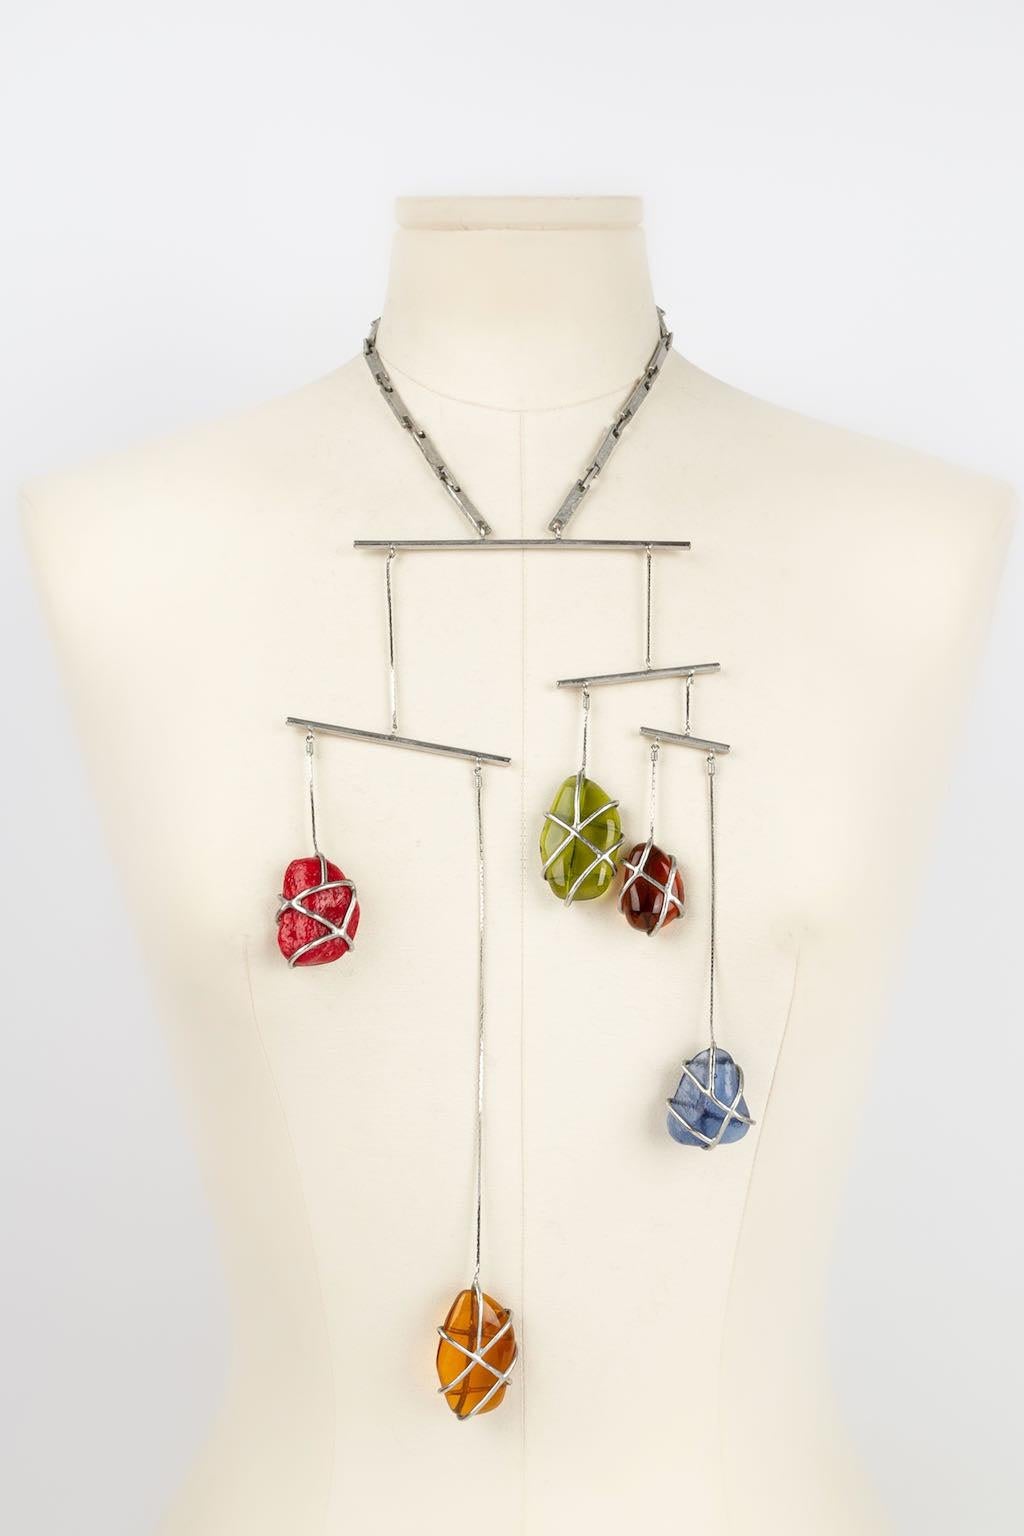 Jean Paul Gaultier -Halskette aus versilbertem Metall mit mehrfarbigen Steinen. Jewell der 1990er Jahre, inspiriert von der mobilen Kunst.

Zusätzliche Informationen: 
Abmessungen: Länge: von 39 cm bis 44 cm - Höhe: 19 cm
Zustand: Sehr guter